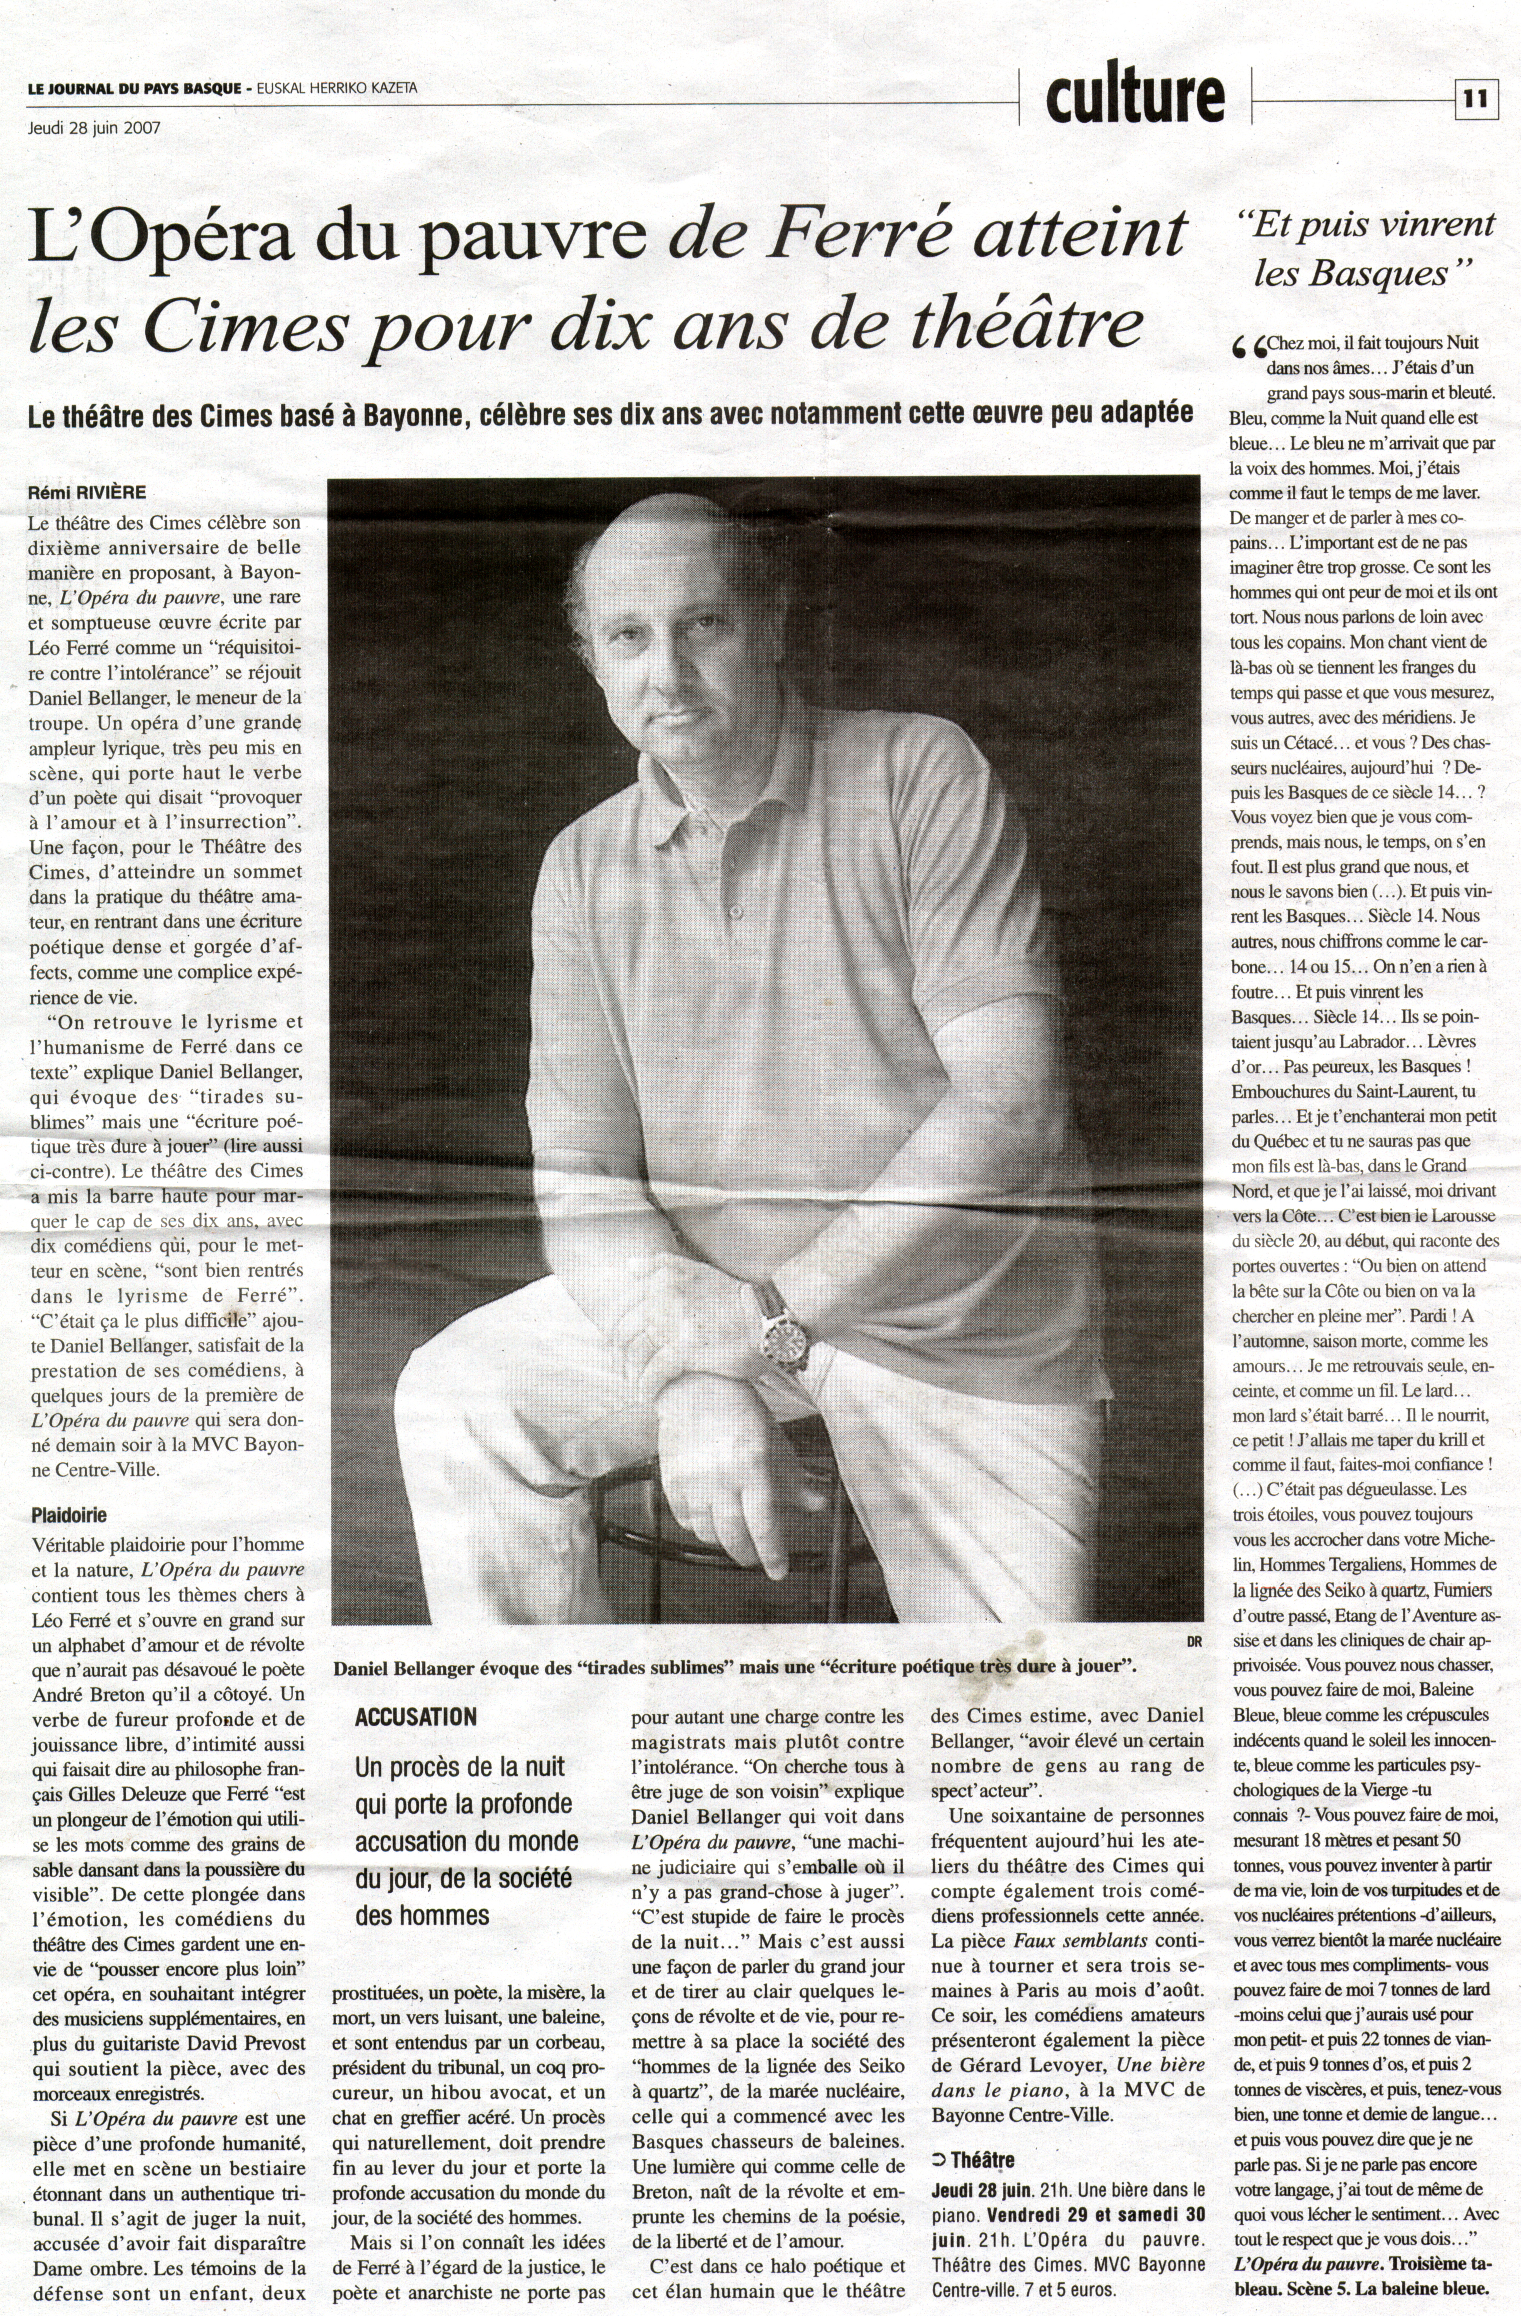  Le journal du Pays Basque du 28/06/2007